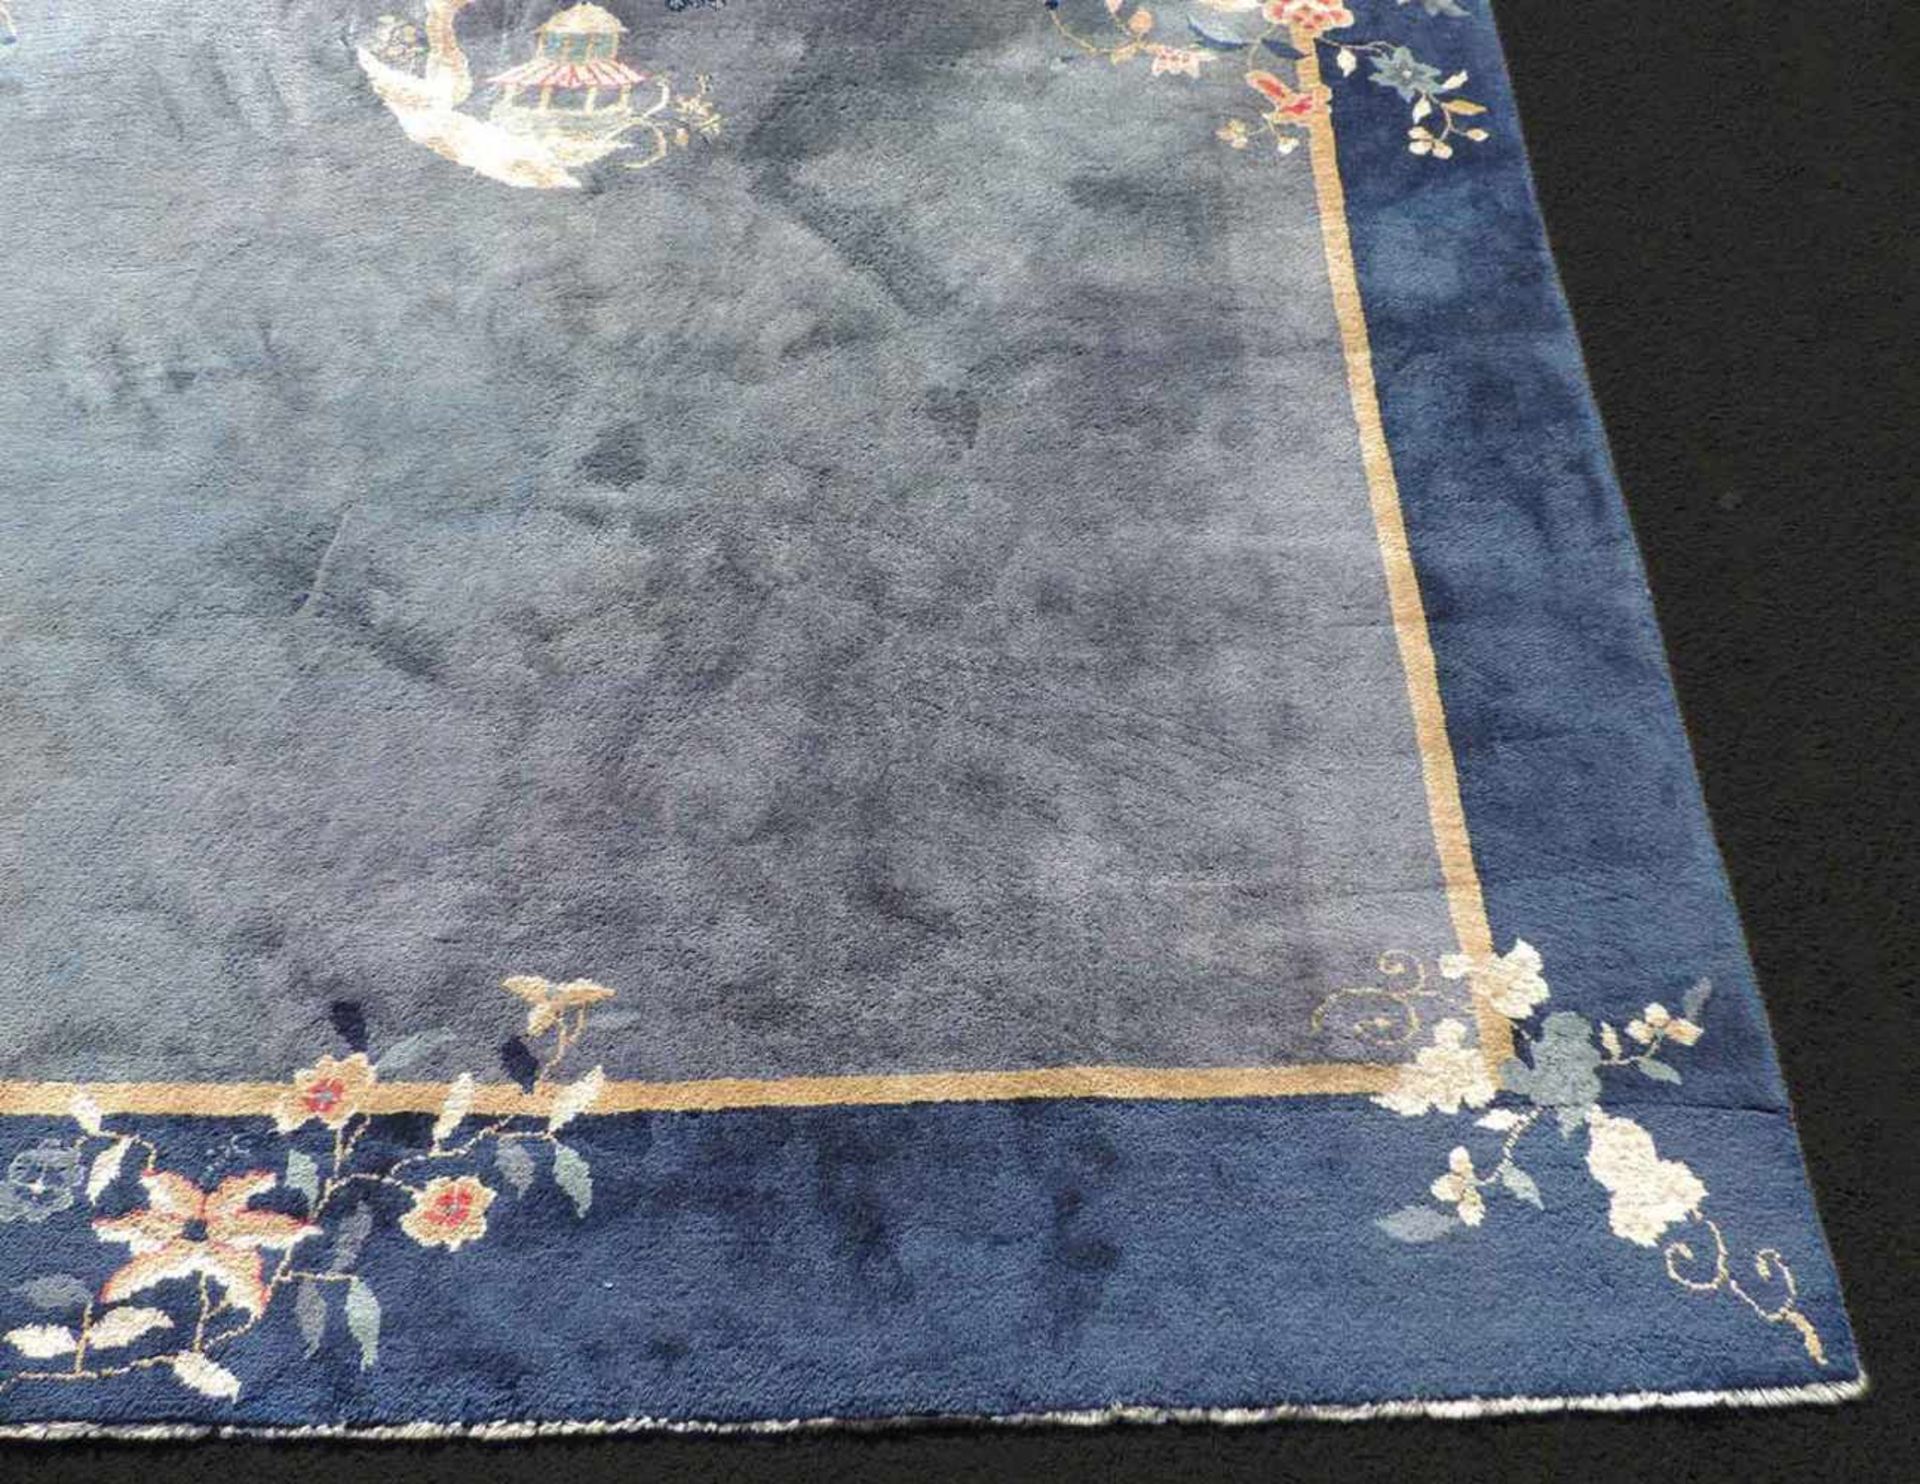 Peking Teppich. China. Antik. Um 1920 361 cm x 267 cm. Handgeknüpft. Mancesterwolle auf Baumwolle. - Bild 3 aus 8